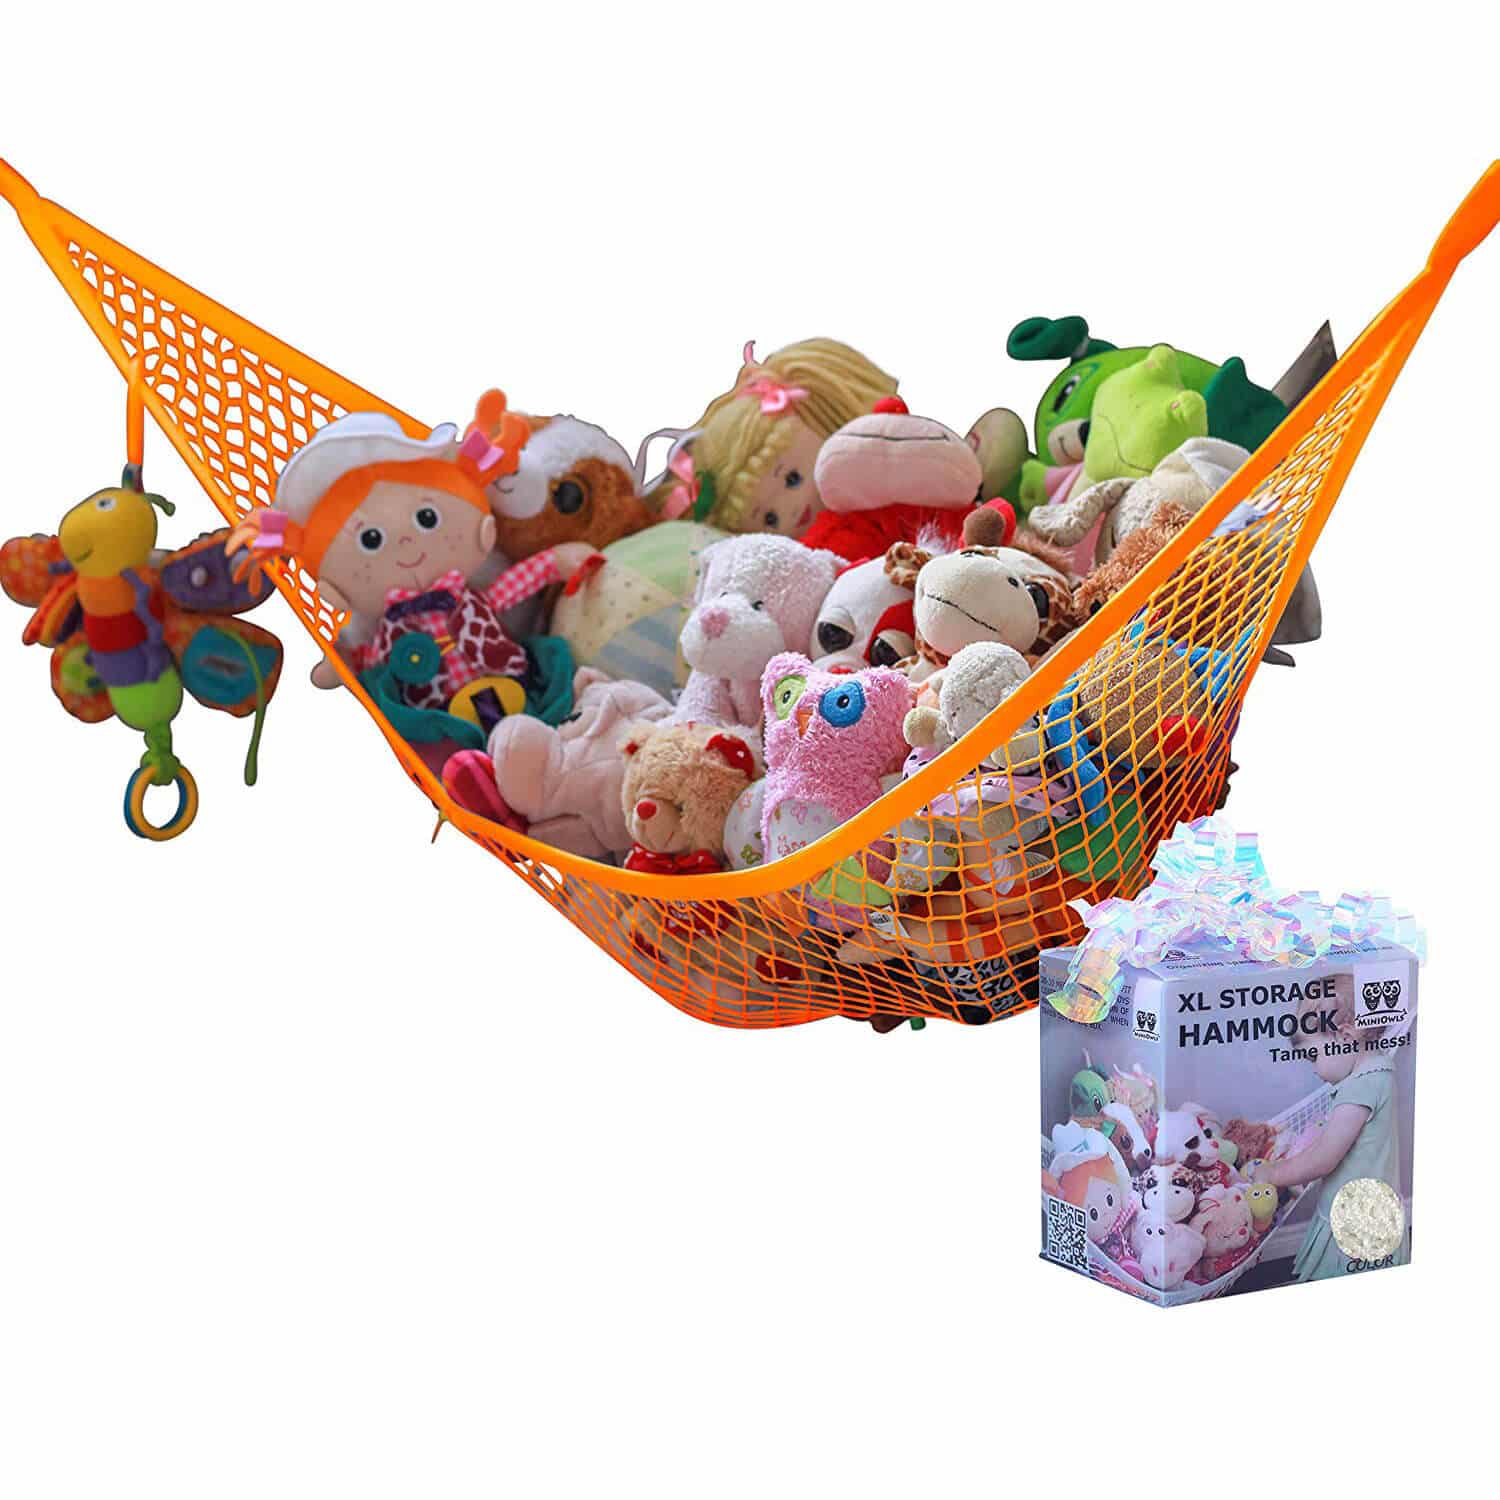 Toy Storage Hammock Orange - MiniOwls Toy Storage Solutions